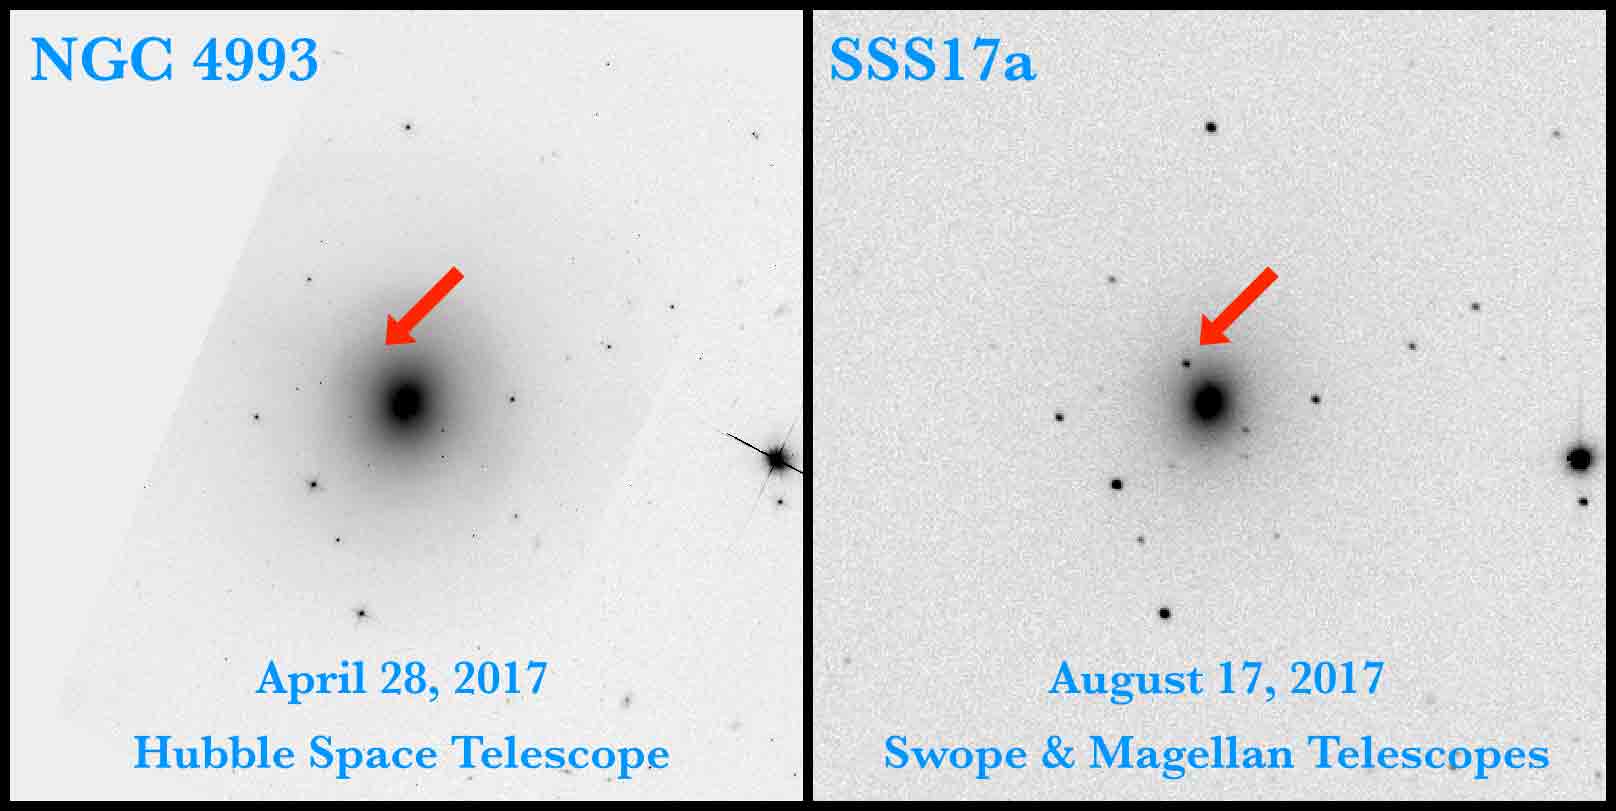 ภาพจุดแสงจาก จีดับเบิลยู 170817 ถ่ายโดยกล้องสวอปของหอดูดาวคาร์เนกี เป็นภาพเหตุการณ์ที่ถ่ายในย่านแสงขาวภาพแรกที่ถ่ายได้ 